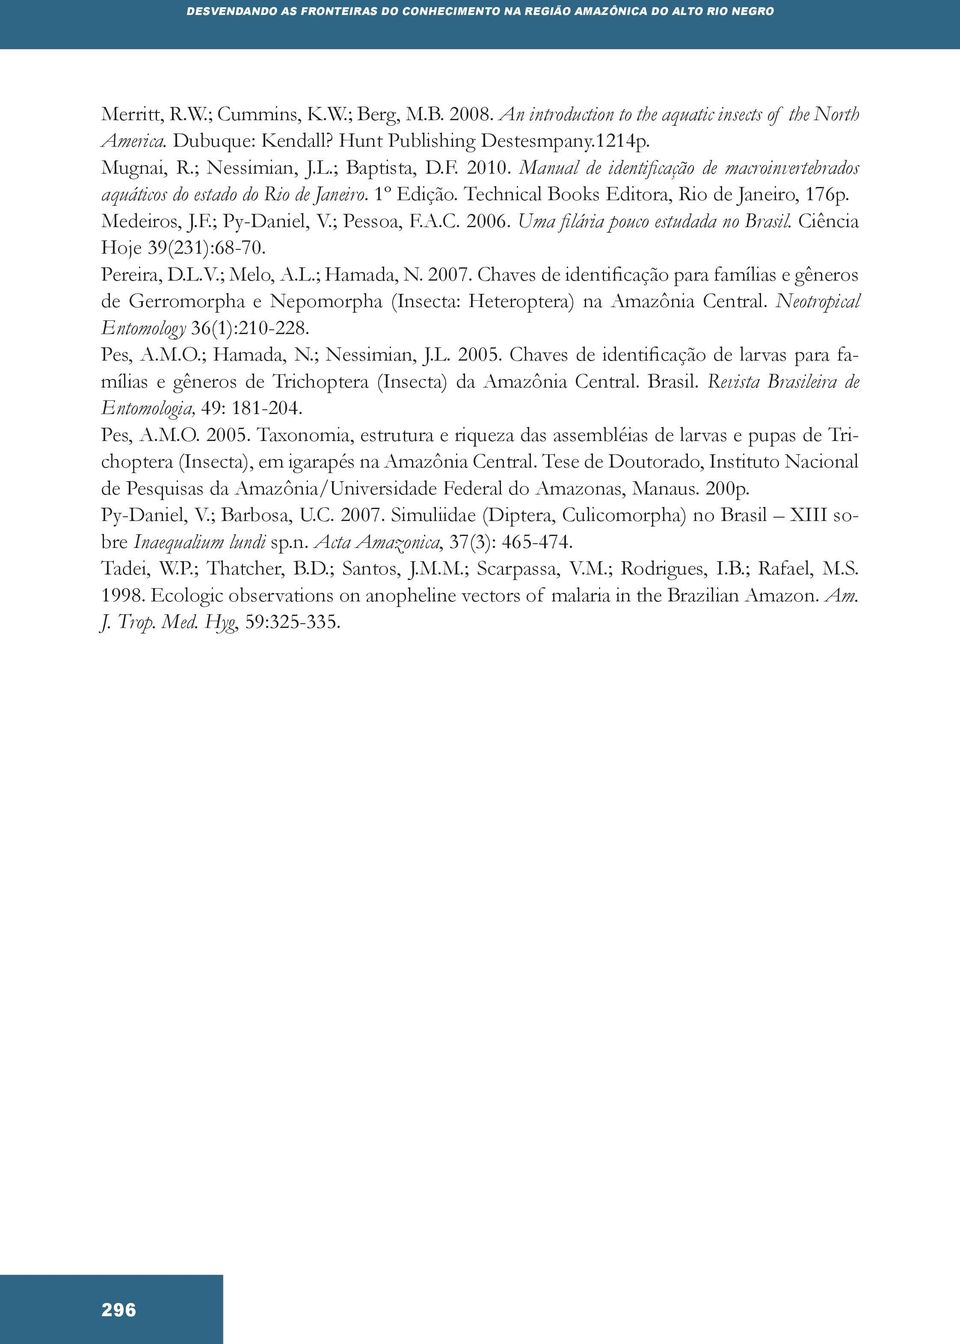 Technical Books Editora, Rio de Janeiro, 176p. Medeiros, J.F.; Py-Daniel, V.; Pessoa, F.A.C. 2006. Uma filária pouco estudada no Brasil. Ciência Hoje 39(231):68-70. Pereira, D.L.V.; Melo, A.L.; Hamada, N.